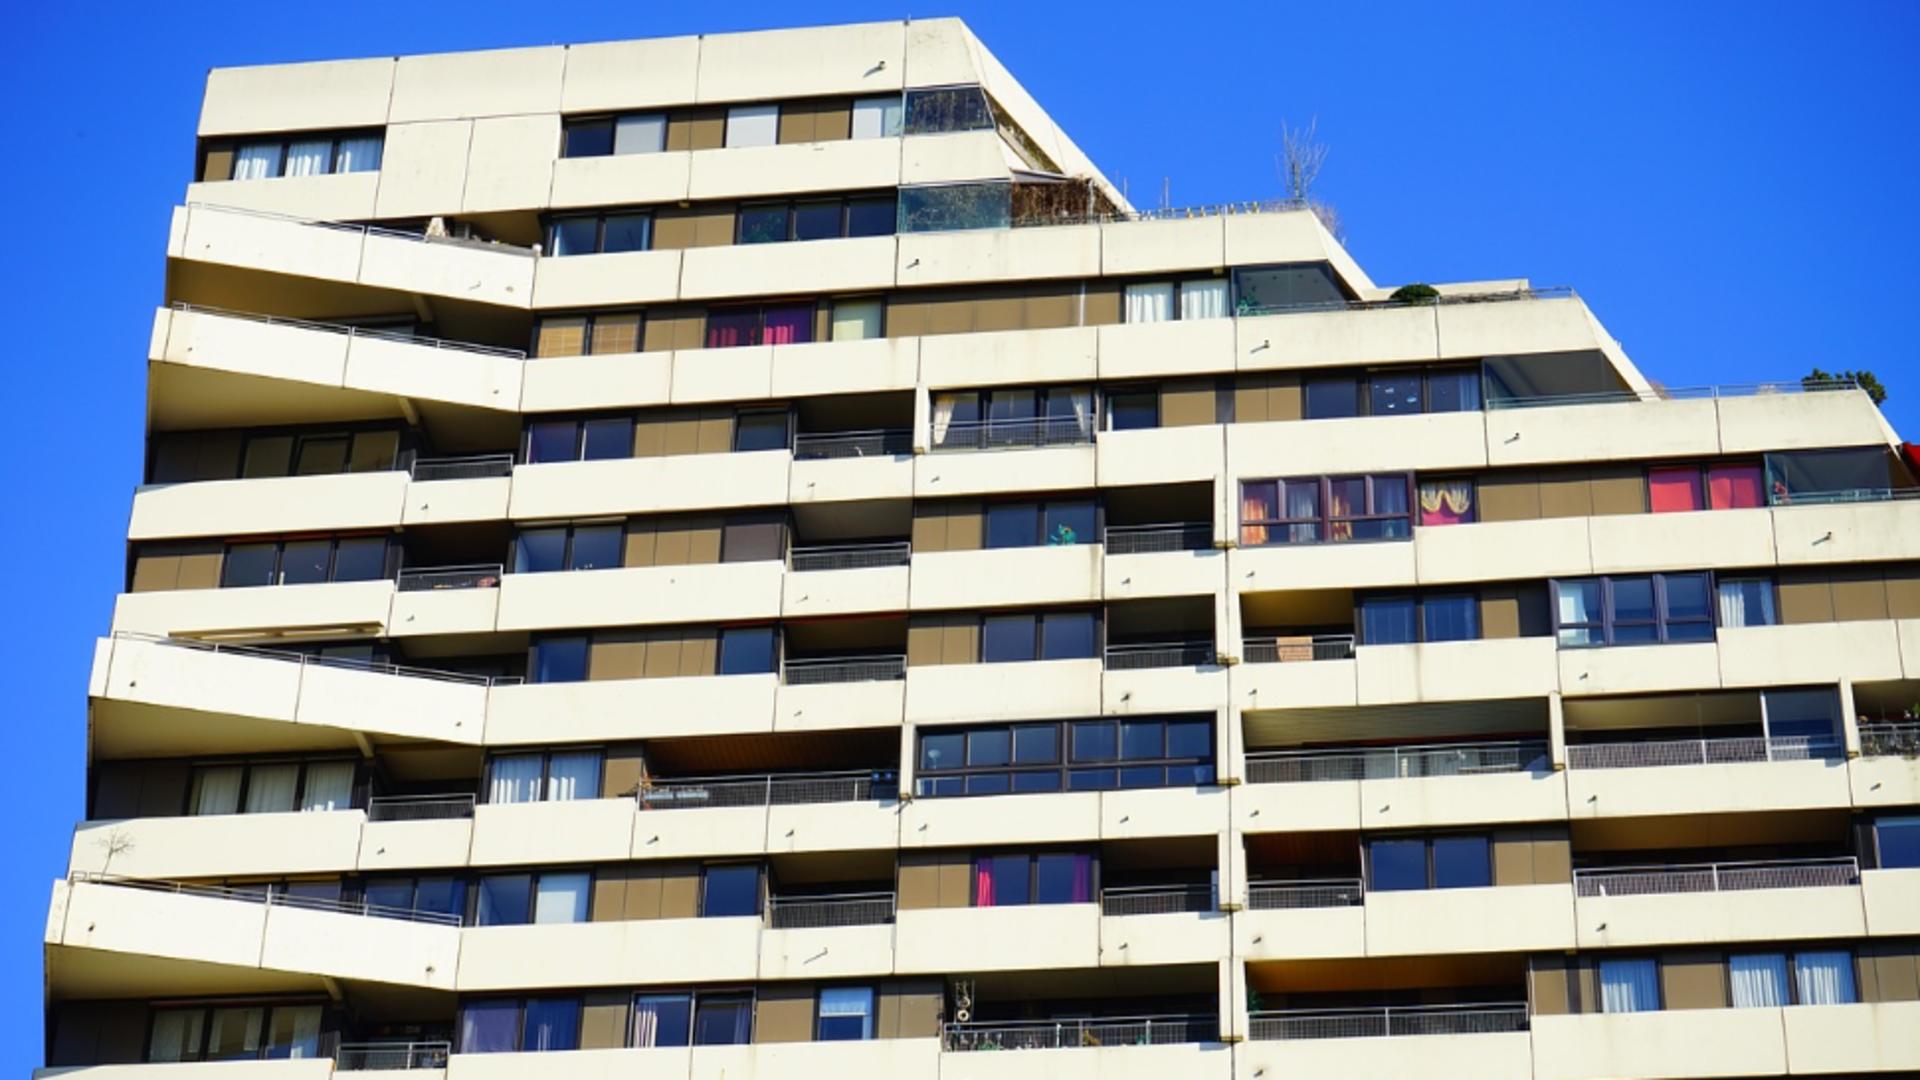 Creștere spectaculoasă a prețurilor apartamentelor în România: Care sunt orașele cu cele mai mari incrementări